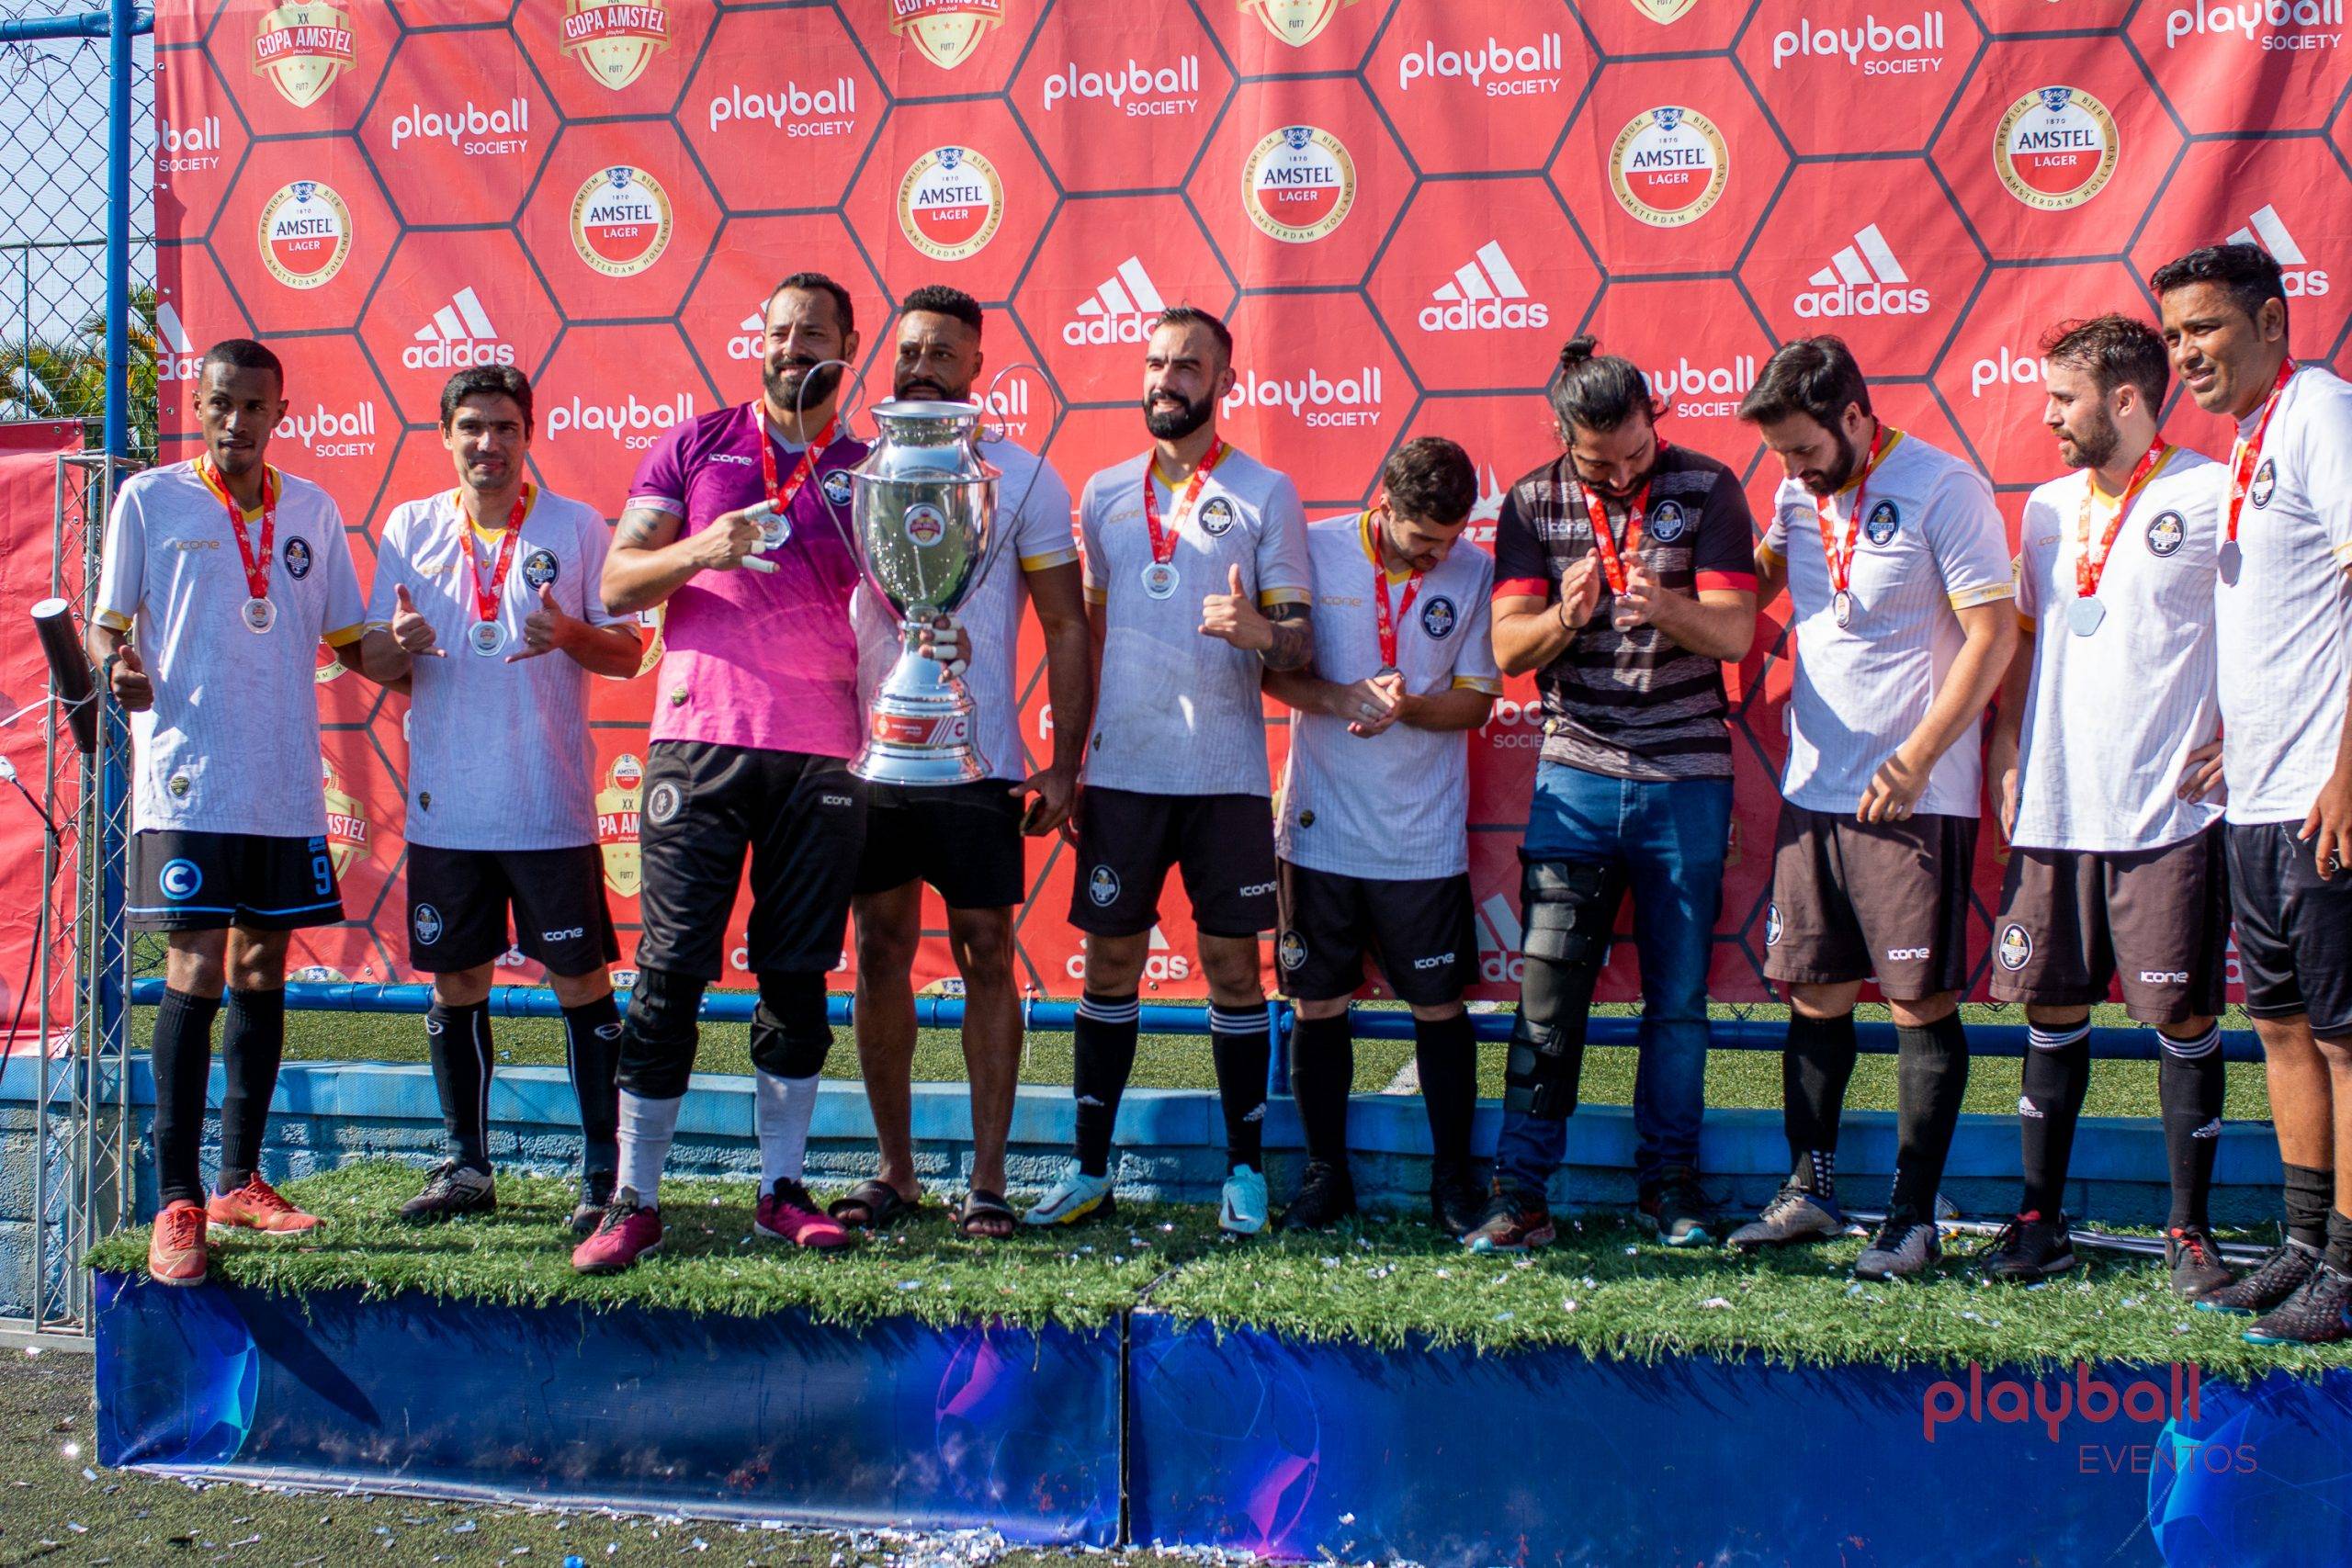 Campeonatos Amadores-O maior complexo de quadras society de São Paulo, oferece a melhor resenha e muito futebol, para completar seus dias com total diversão.